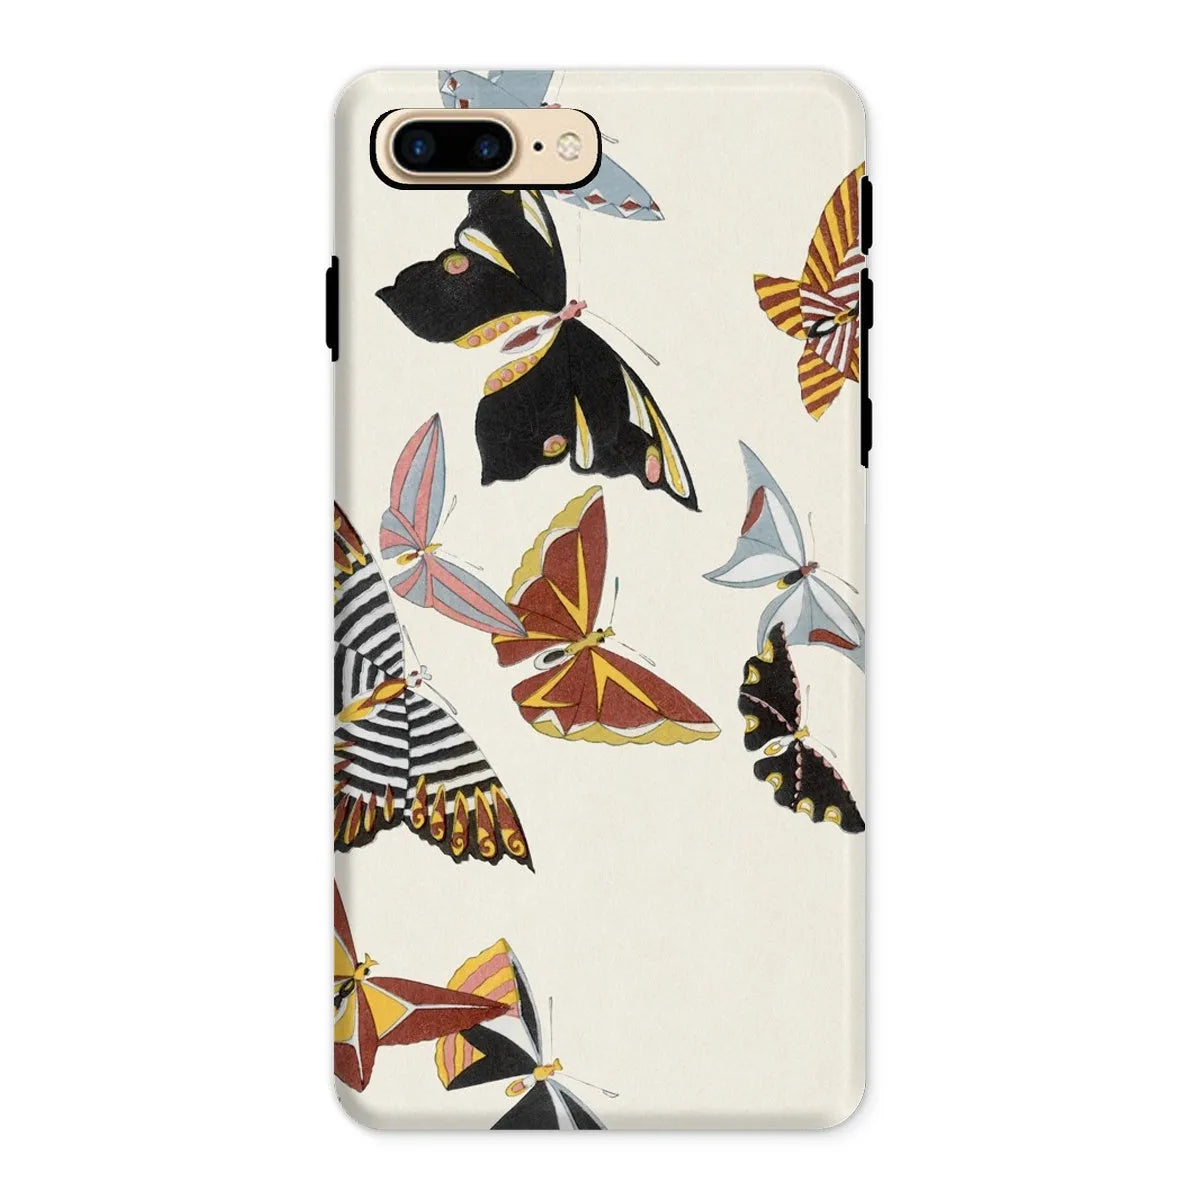 Japanese Butterfly Art Phone Case - Kamisaka Sekka - Iphone 8 Plus / Matte - Mobile Phone Cases - Aesthetic Art